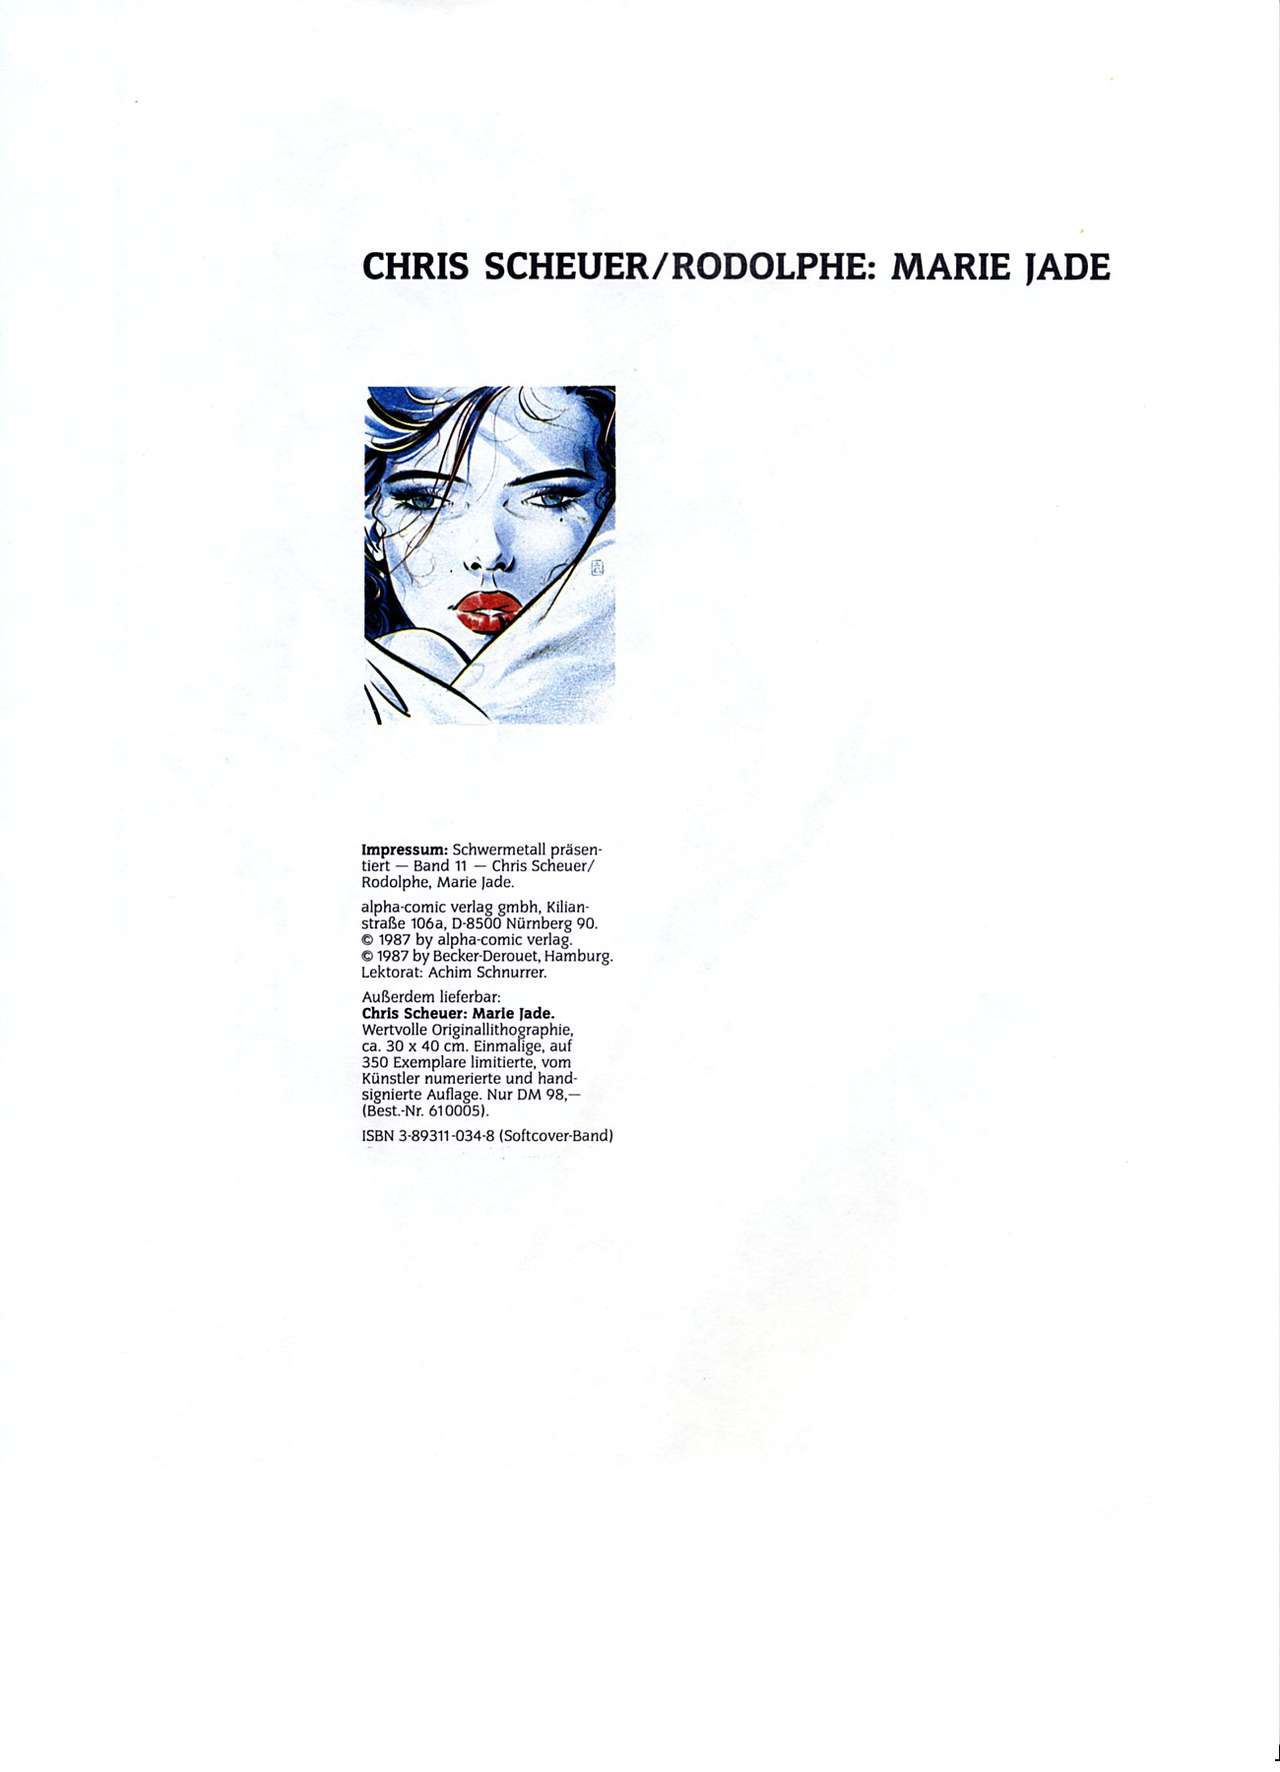 [Chris Scheuer] Marie Jade 3